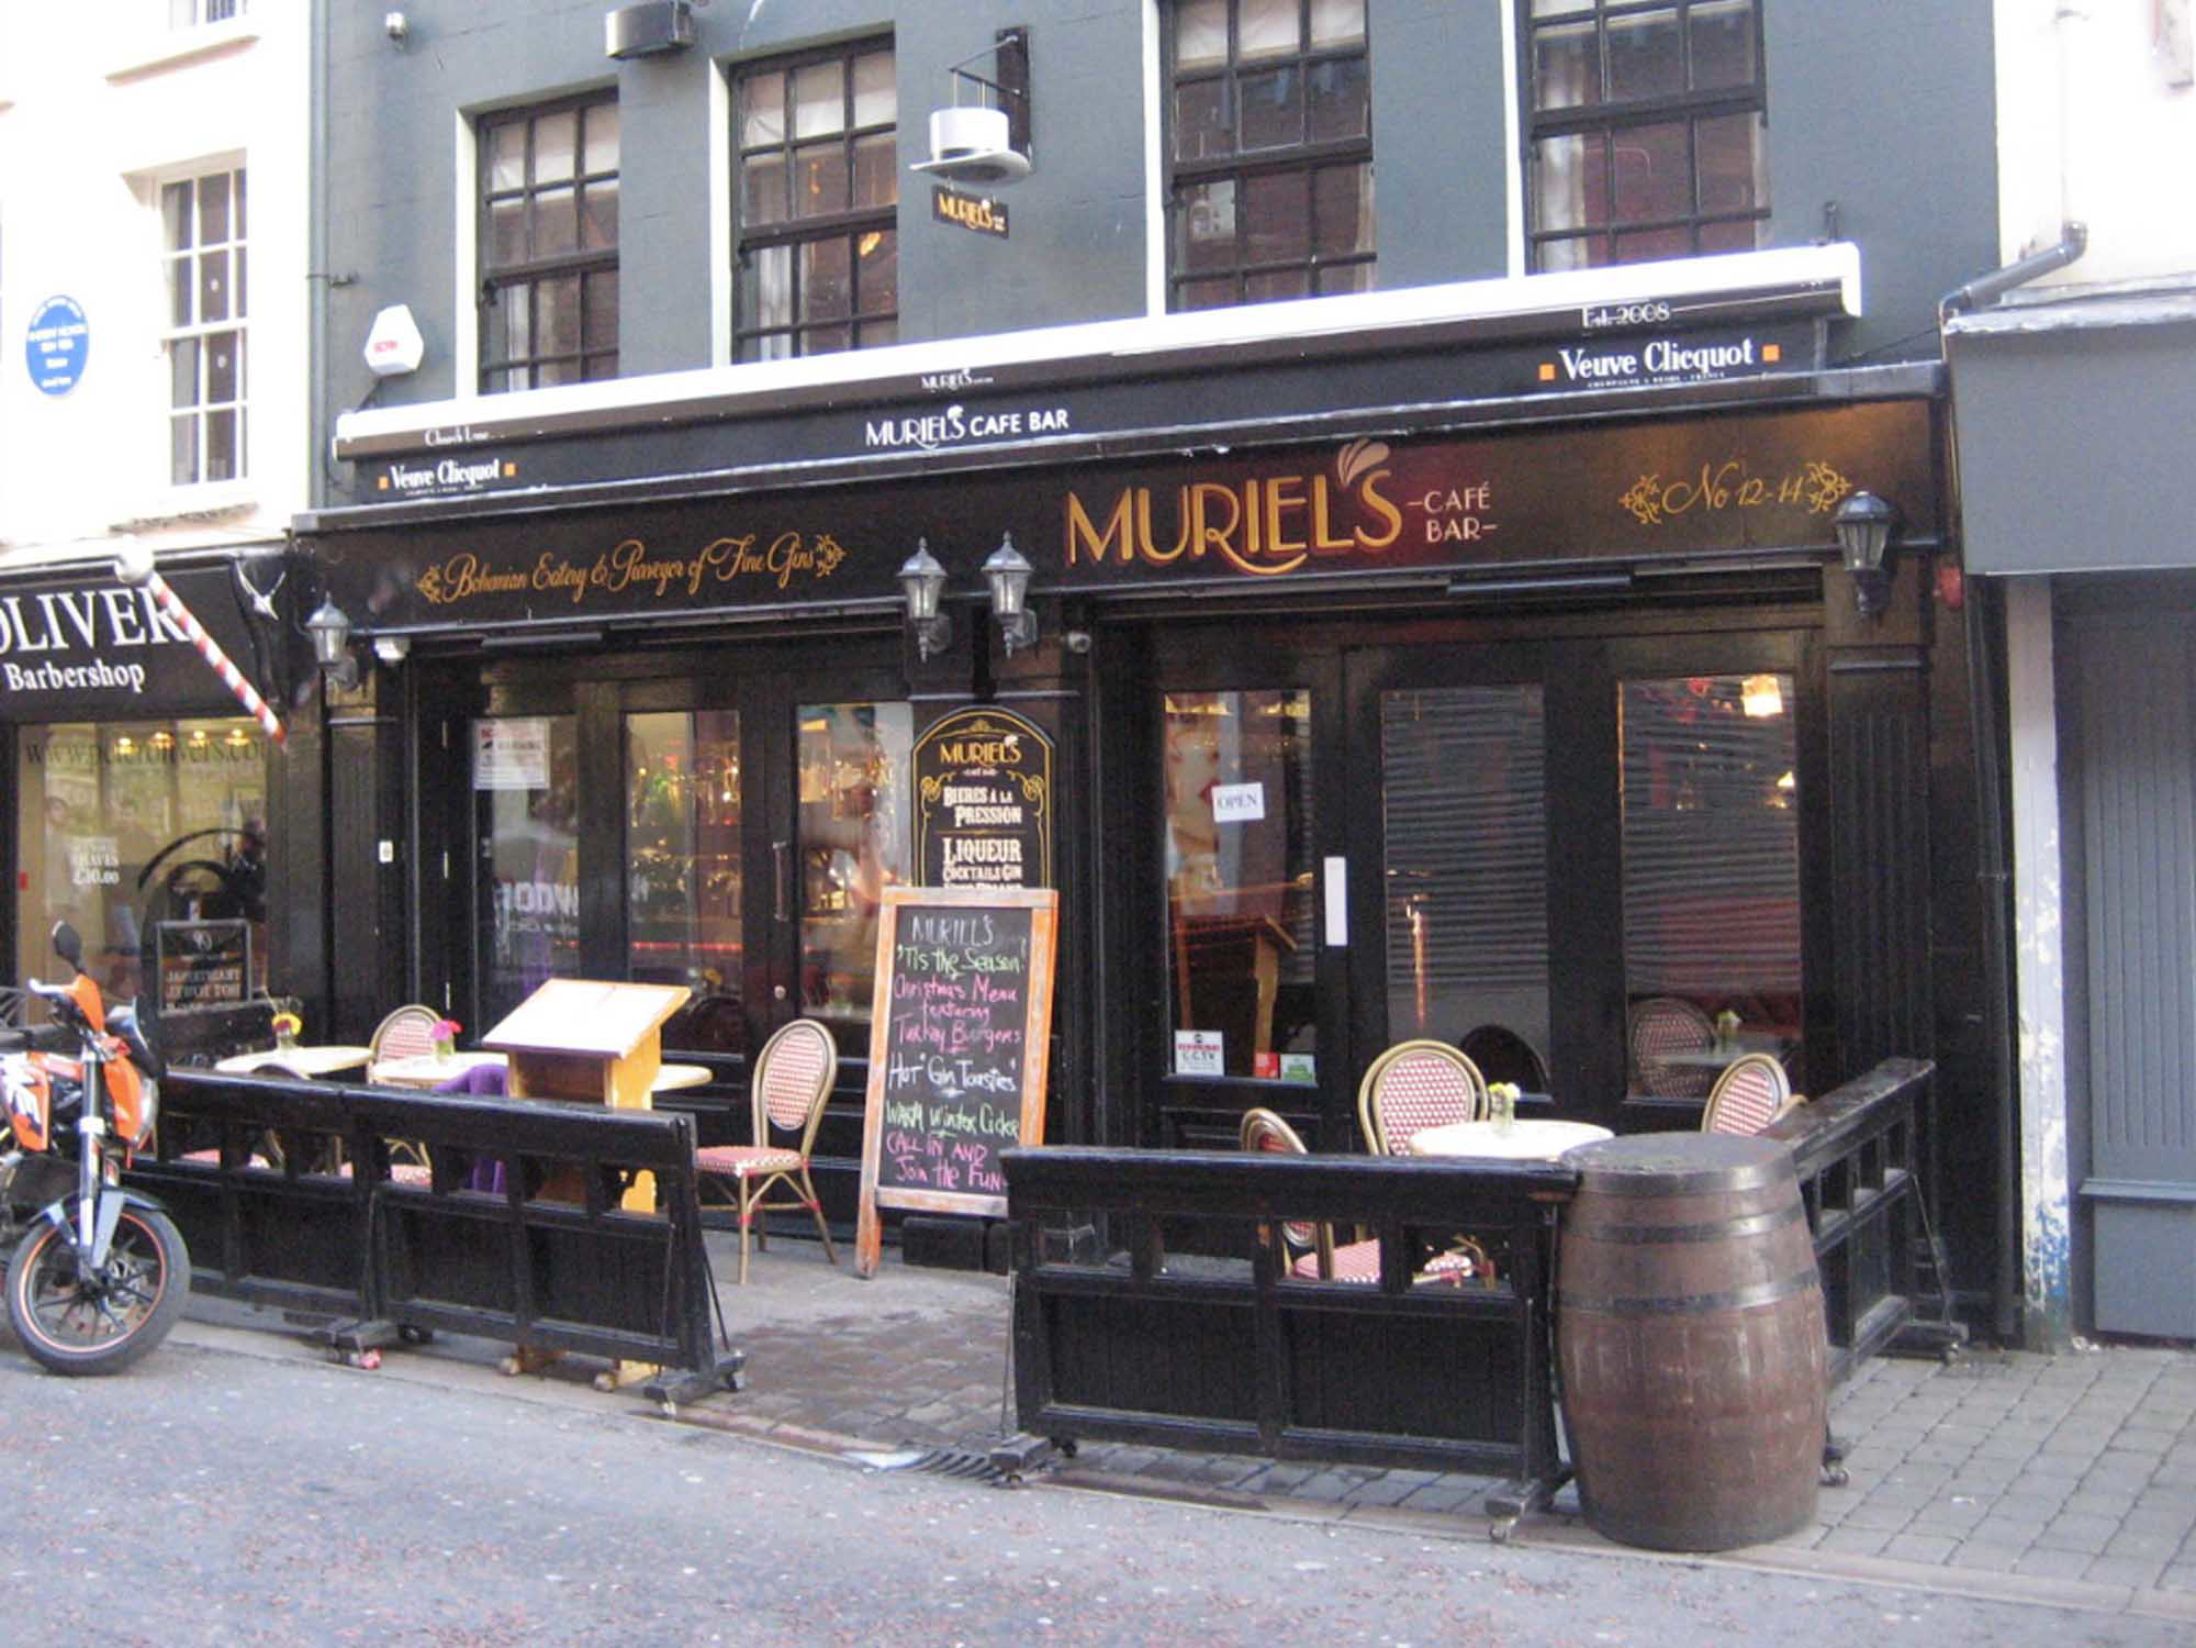 Muriel's Cafe Bar